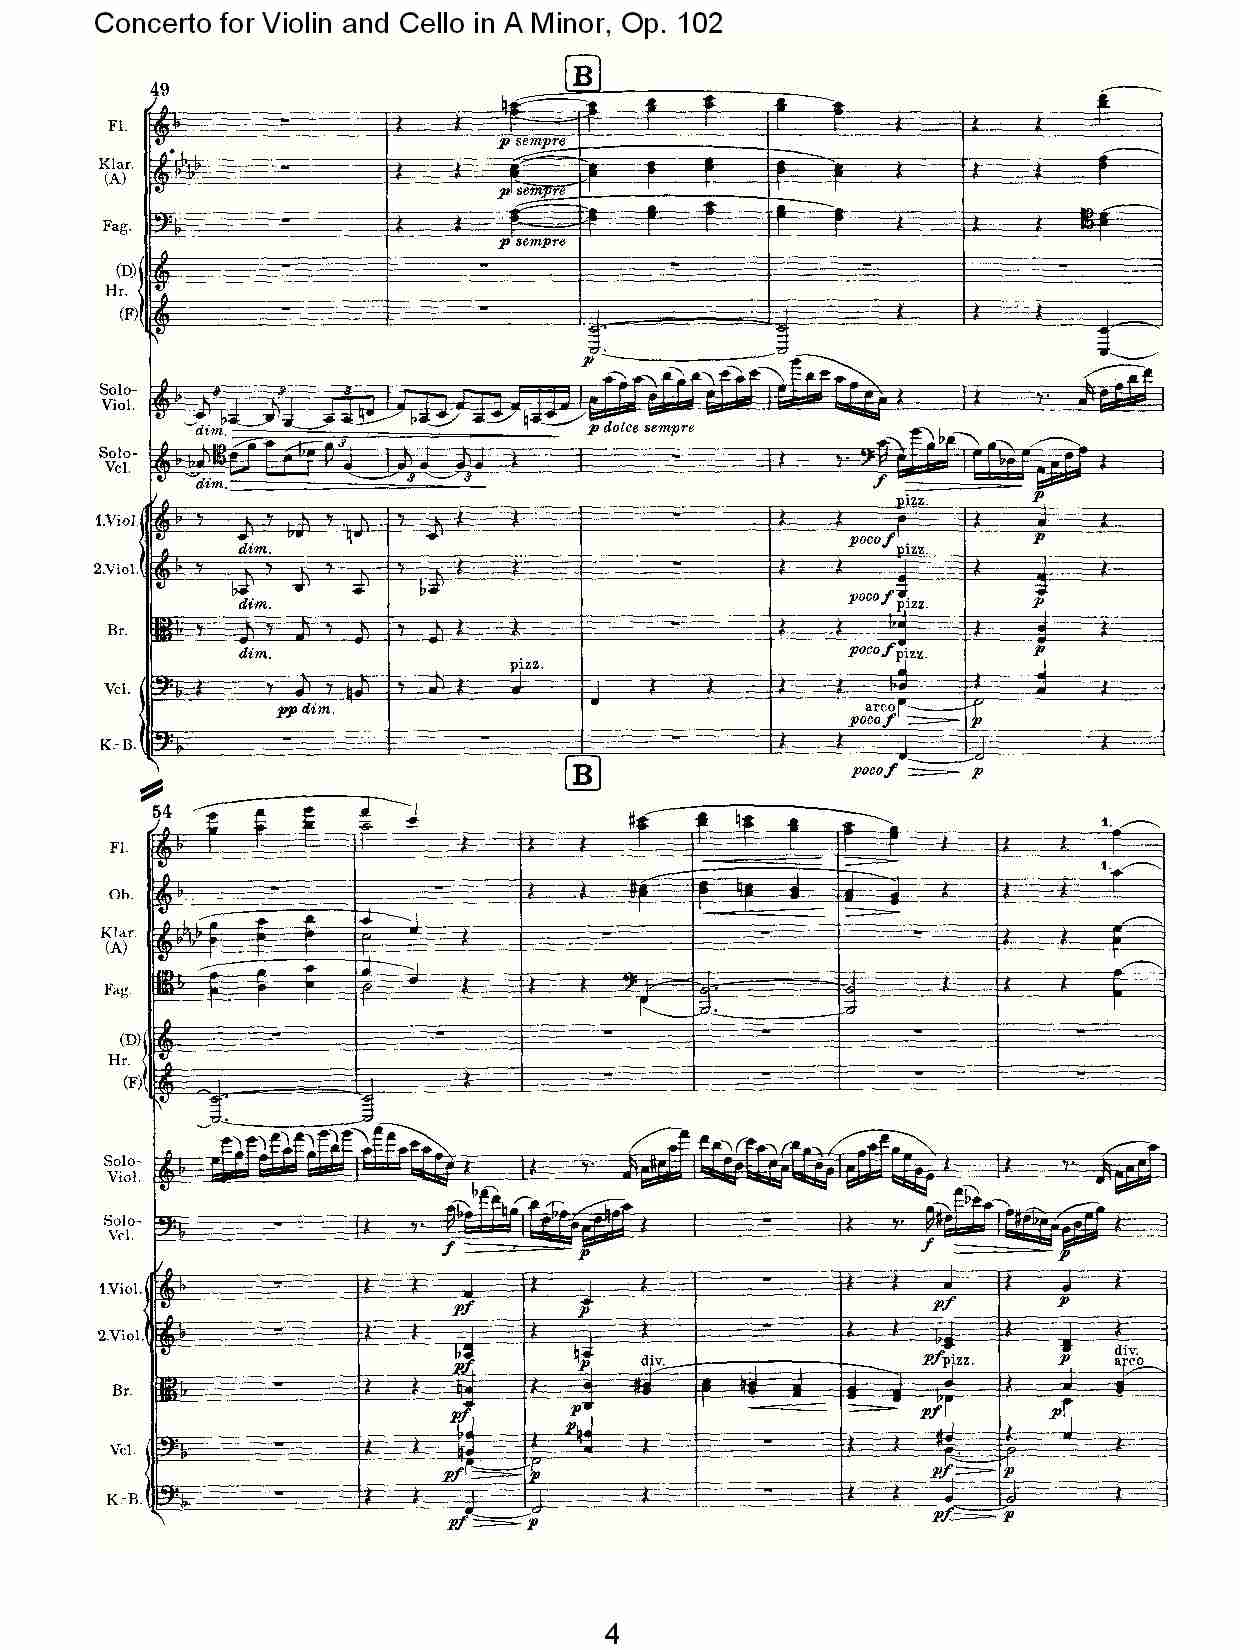 A小调小提琴与大提琴协奏曲, Op.102第二乐章（一）总谱（图4）